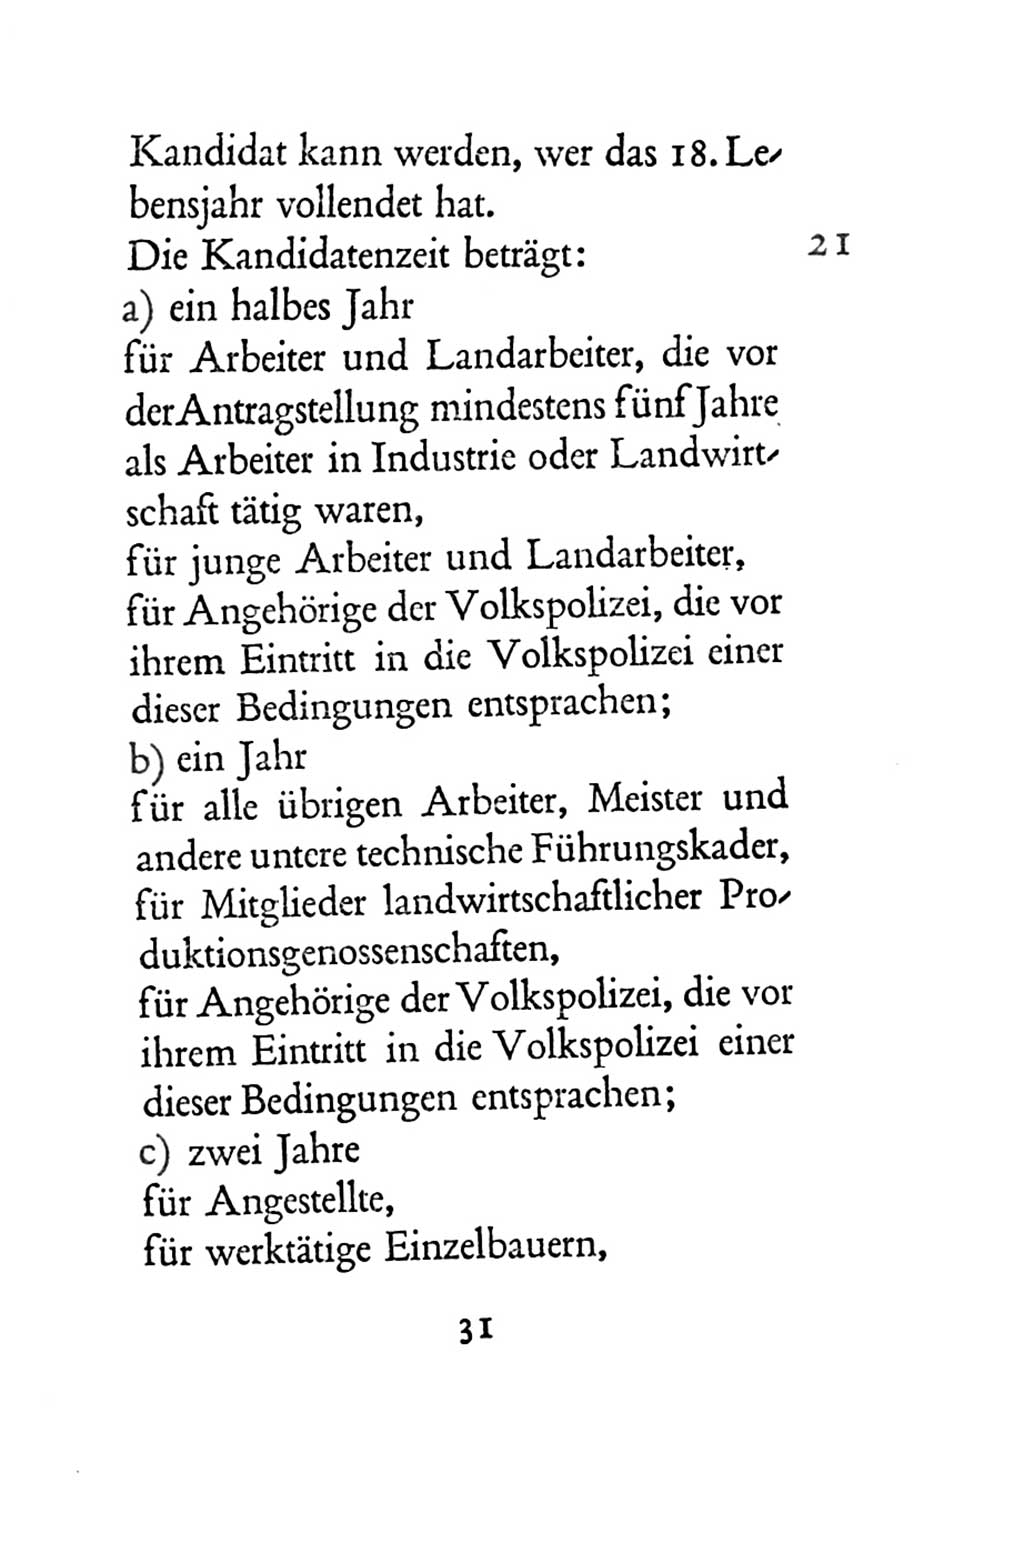 Statut der Sozialistischen Einheitspartei Deutschlands (SED) 1954, Seite 31